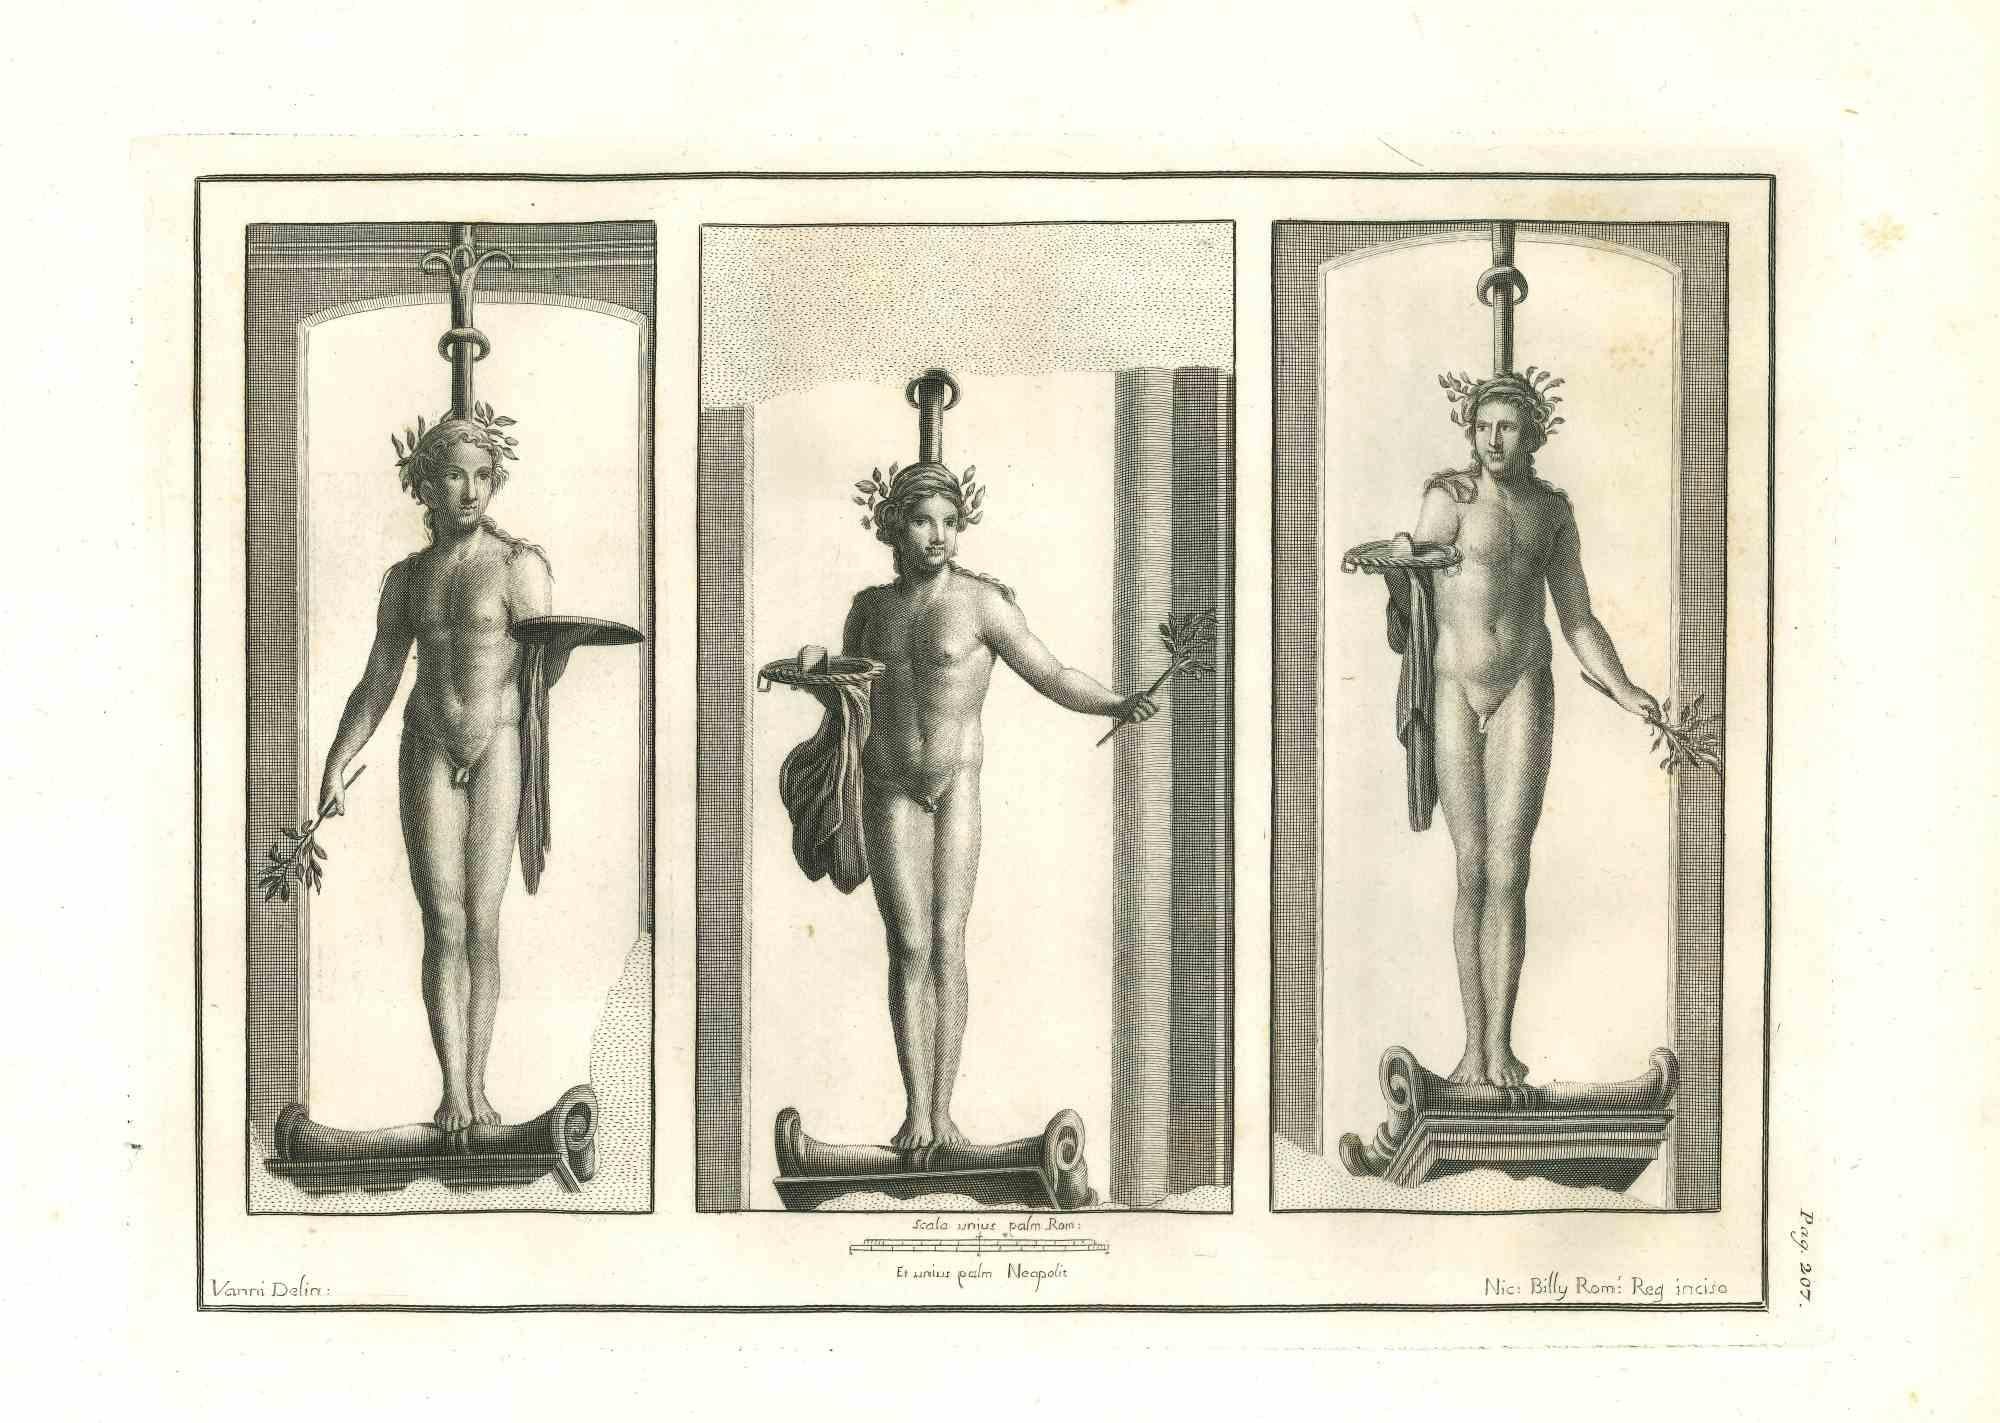 Statues romaines antiques de la série "Antiquités d'Herculanum", est une gravure originale sur papier réalisée par Nicola Billy au 18ème siècle.

Signé sur la plaque.

Bon état, à l'exception de quelques petites taches.

La gravure appartient à la